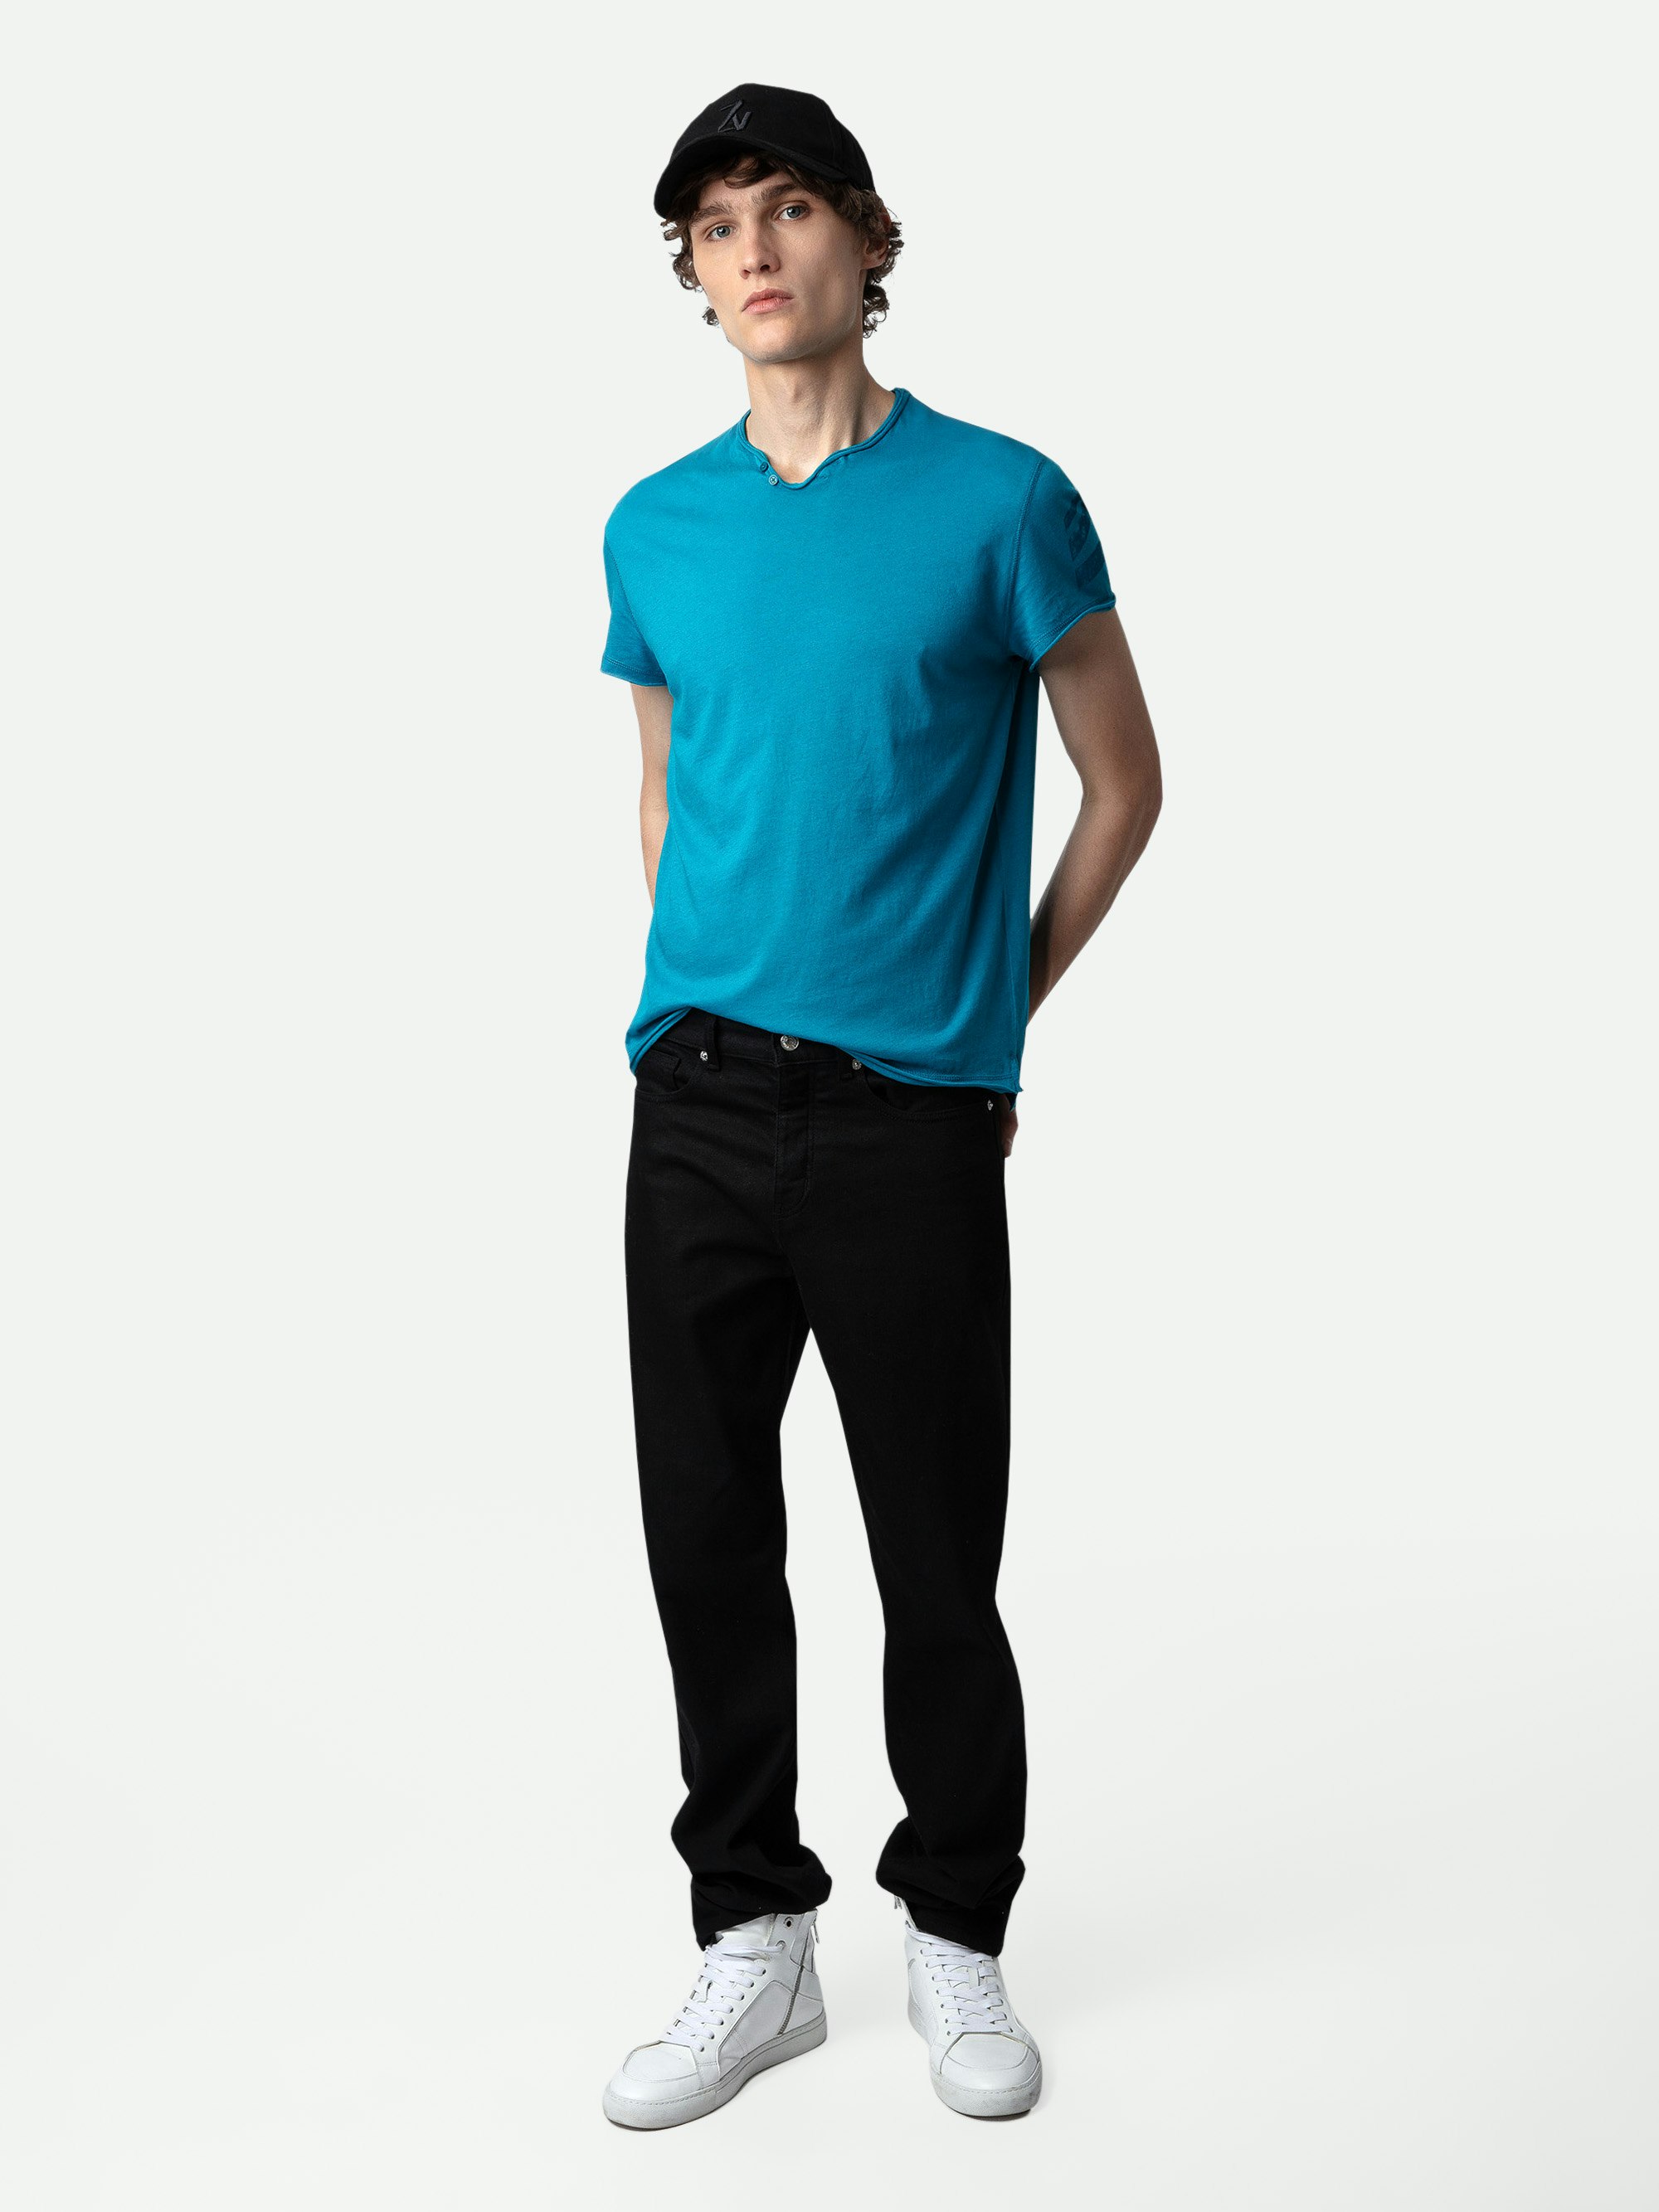 Camiseta Tunecina Monastir Arrow - Camiseta azul cerceta de algodón con cuello tunecino con mangas cortas y flechas en la manga izquierda.